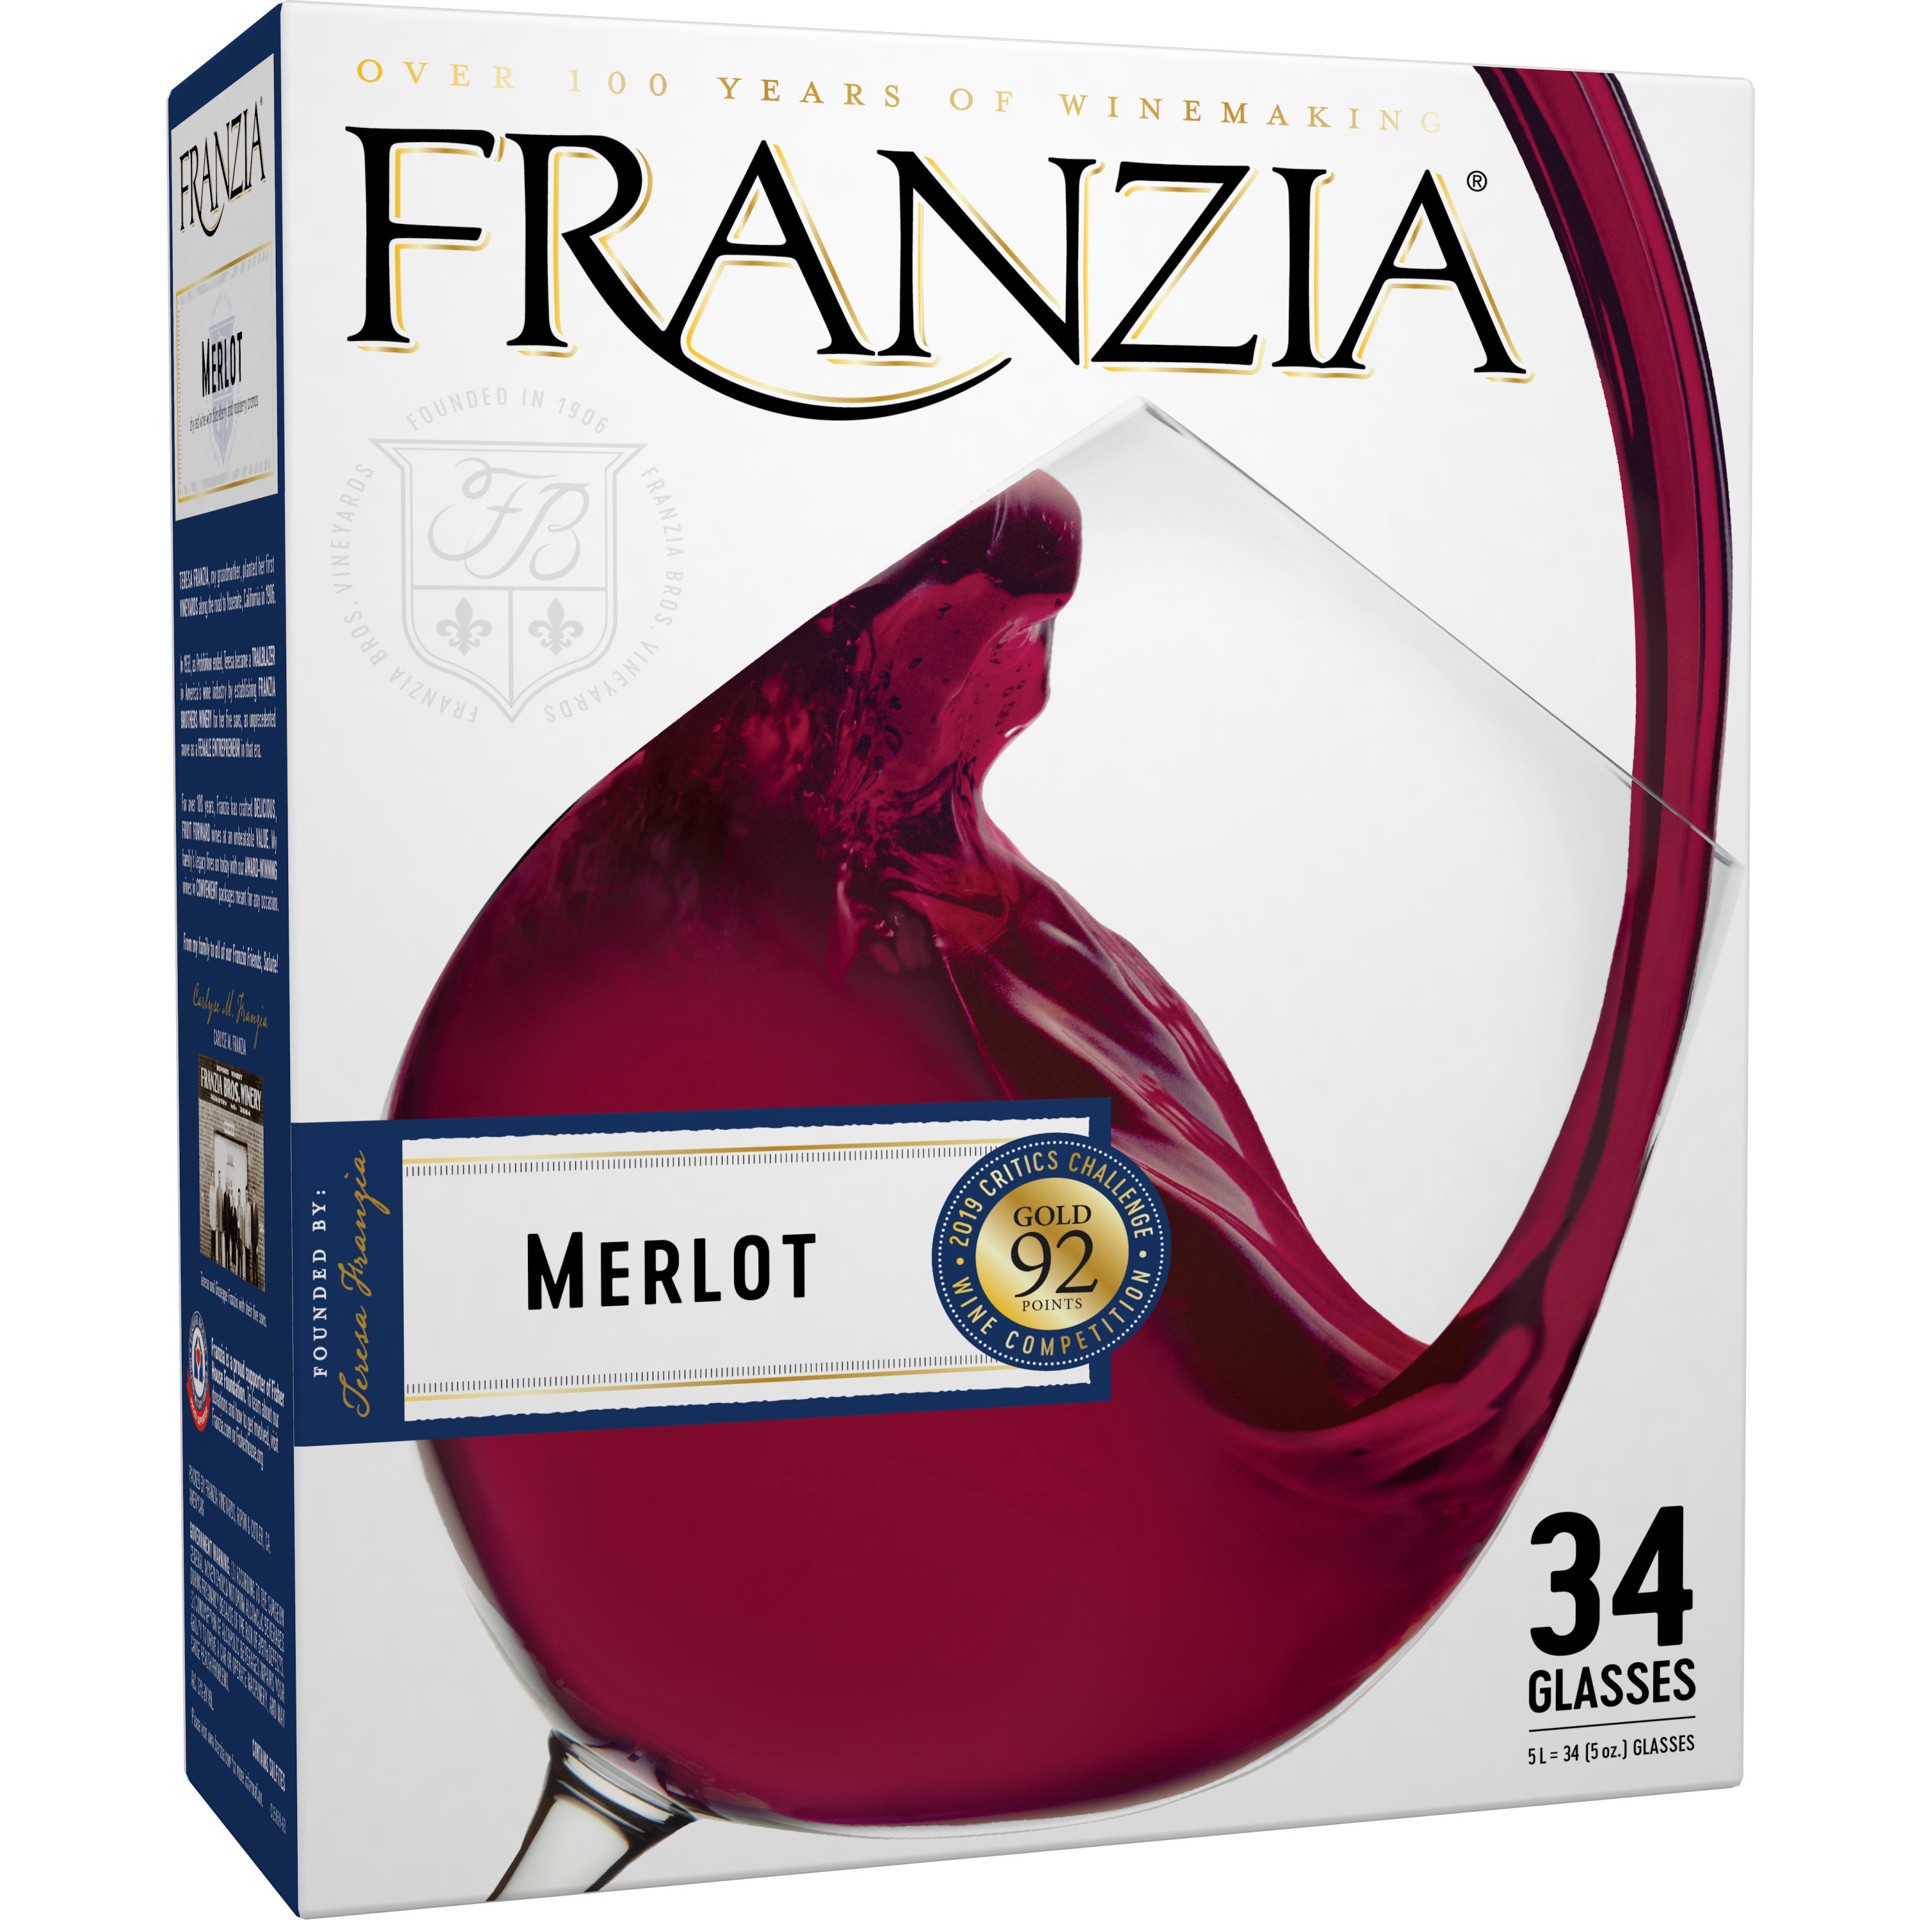 slide 1 of 4, Franzia Merlot, 5 liter